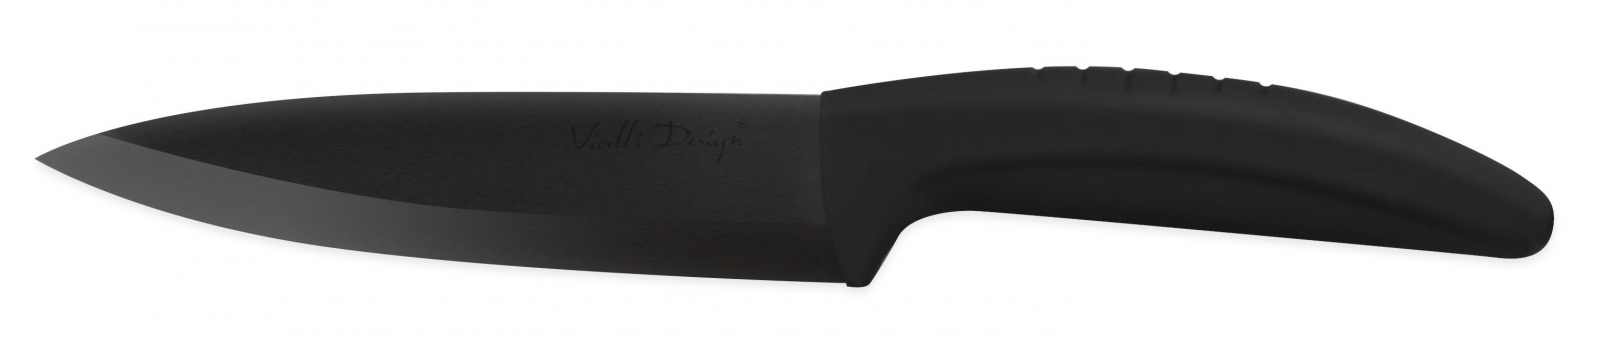 Nóż ceramiczny uniwersalny 13 cm B130A Vialli Design